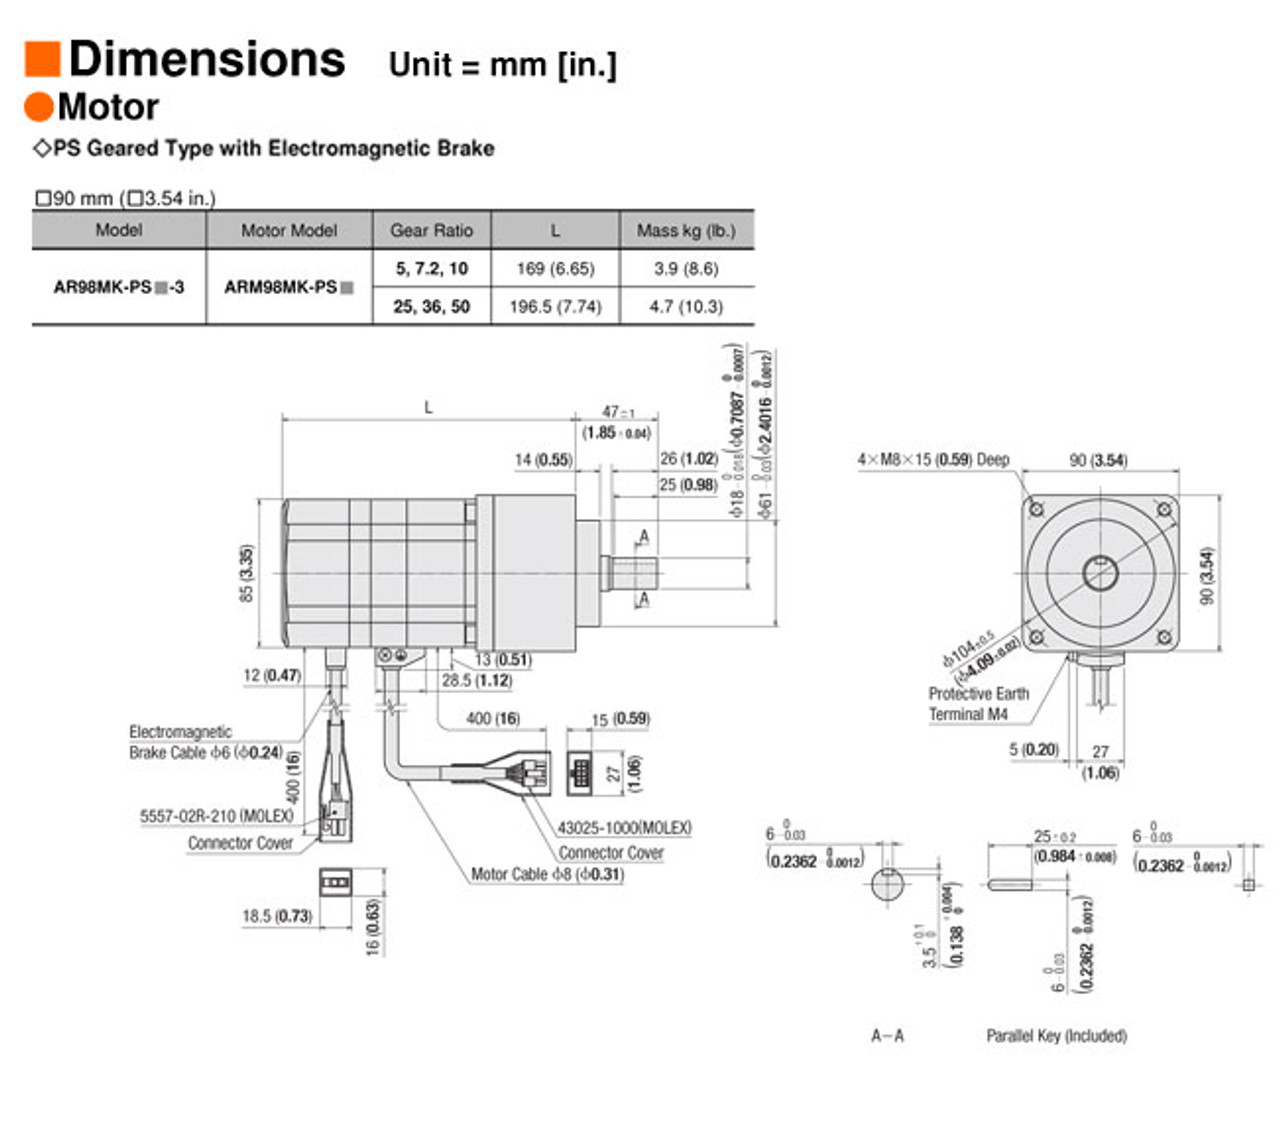 AR98MK-PS36-3 - Dimensions